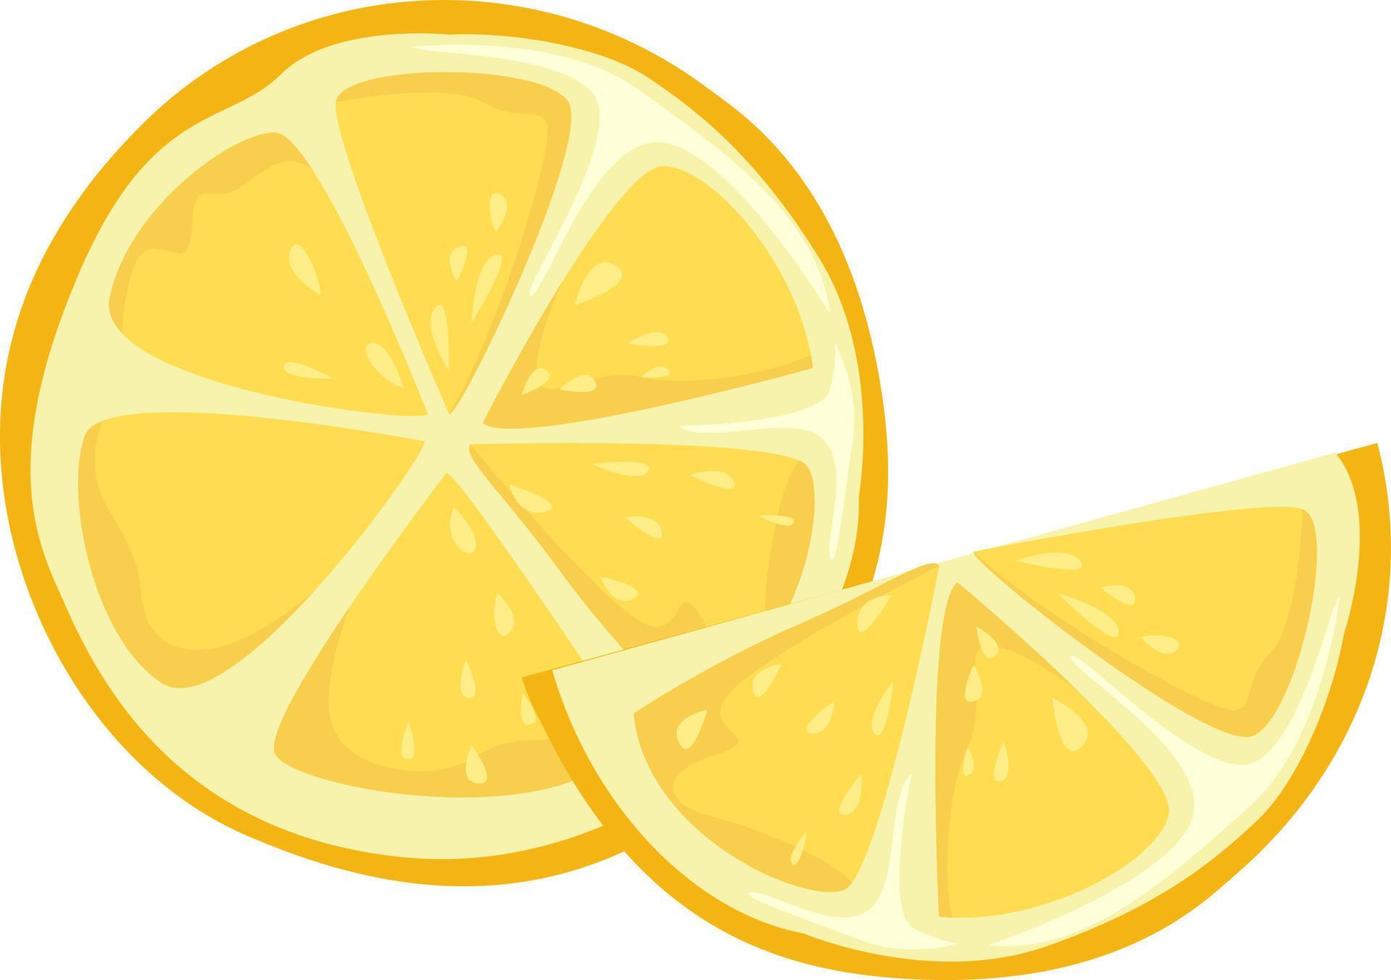 Lemon, illustration, vector on white background